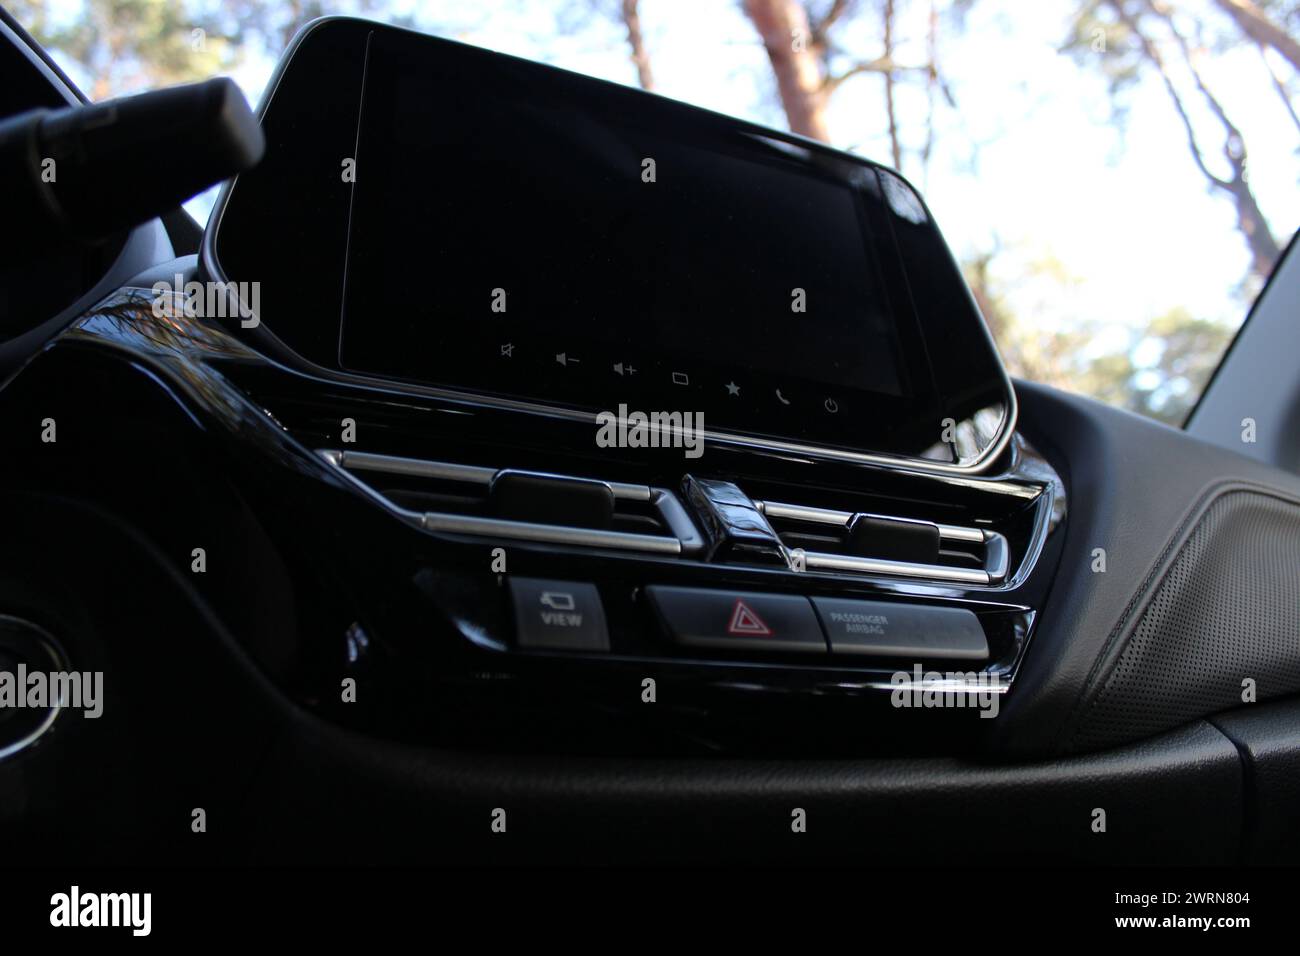 Vista dal basso del display del touch screen disattivato all'interno della vettura Foto Stock